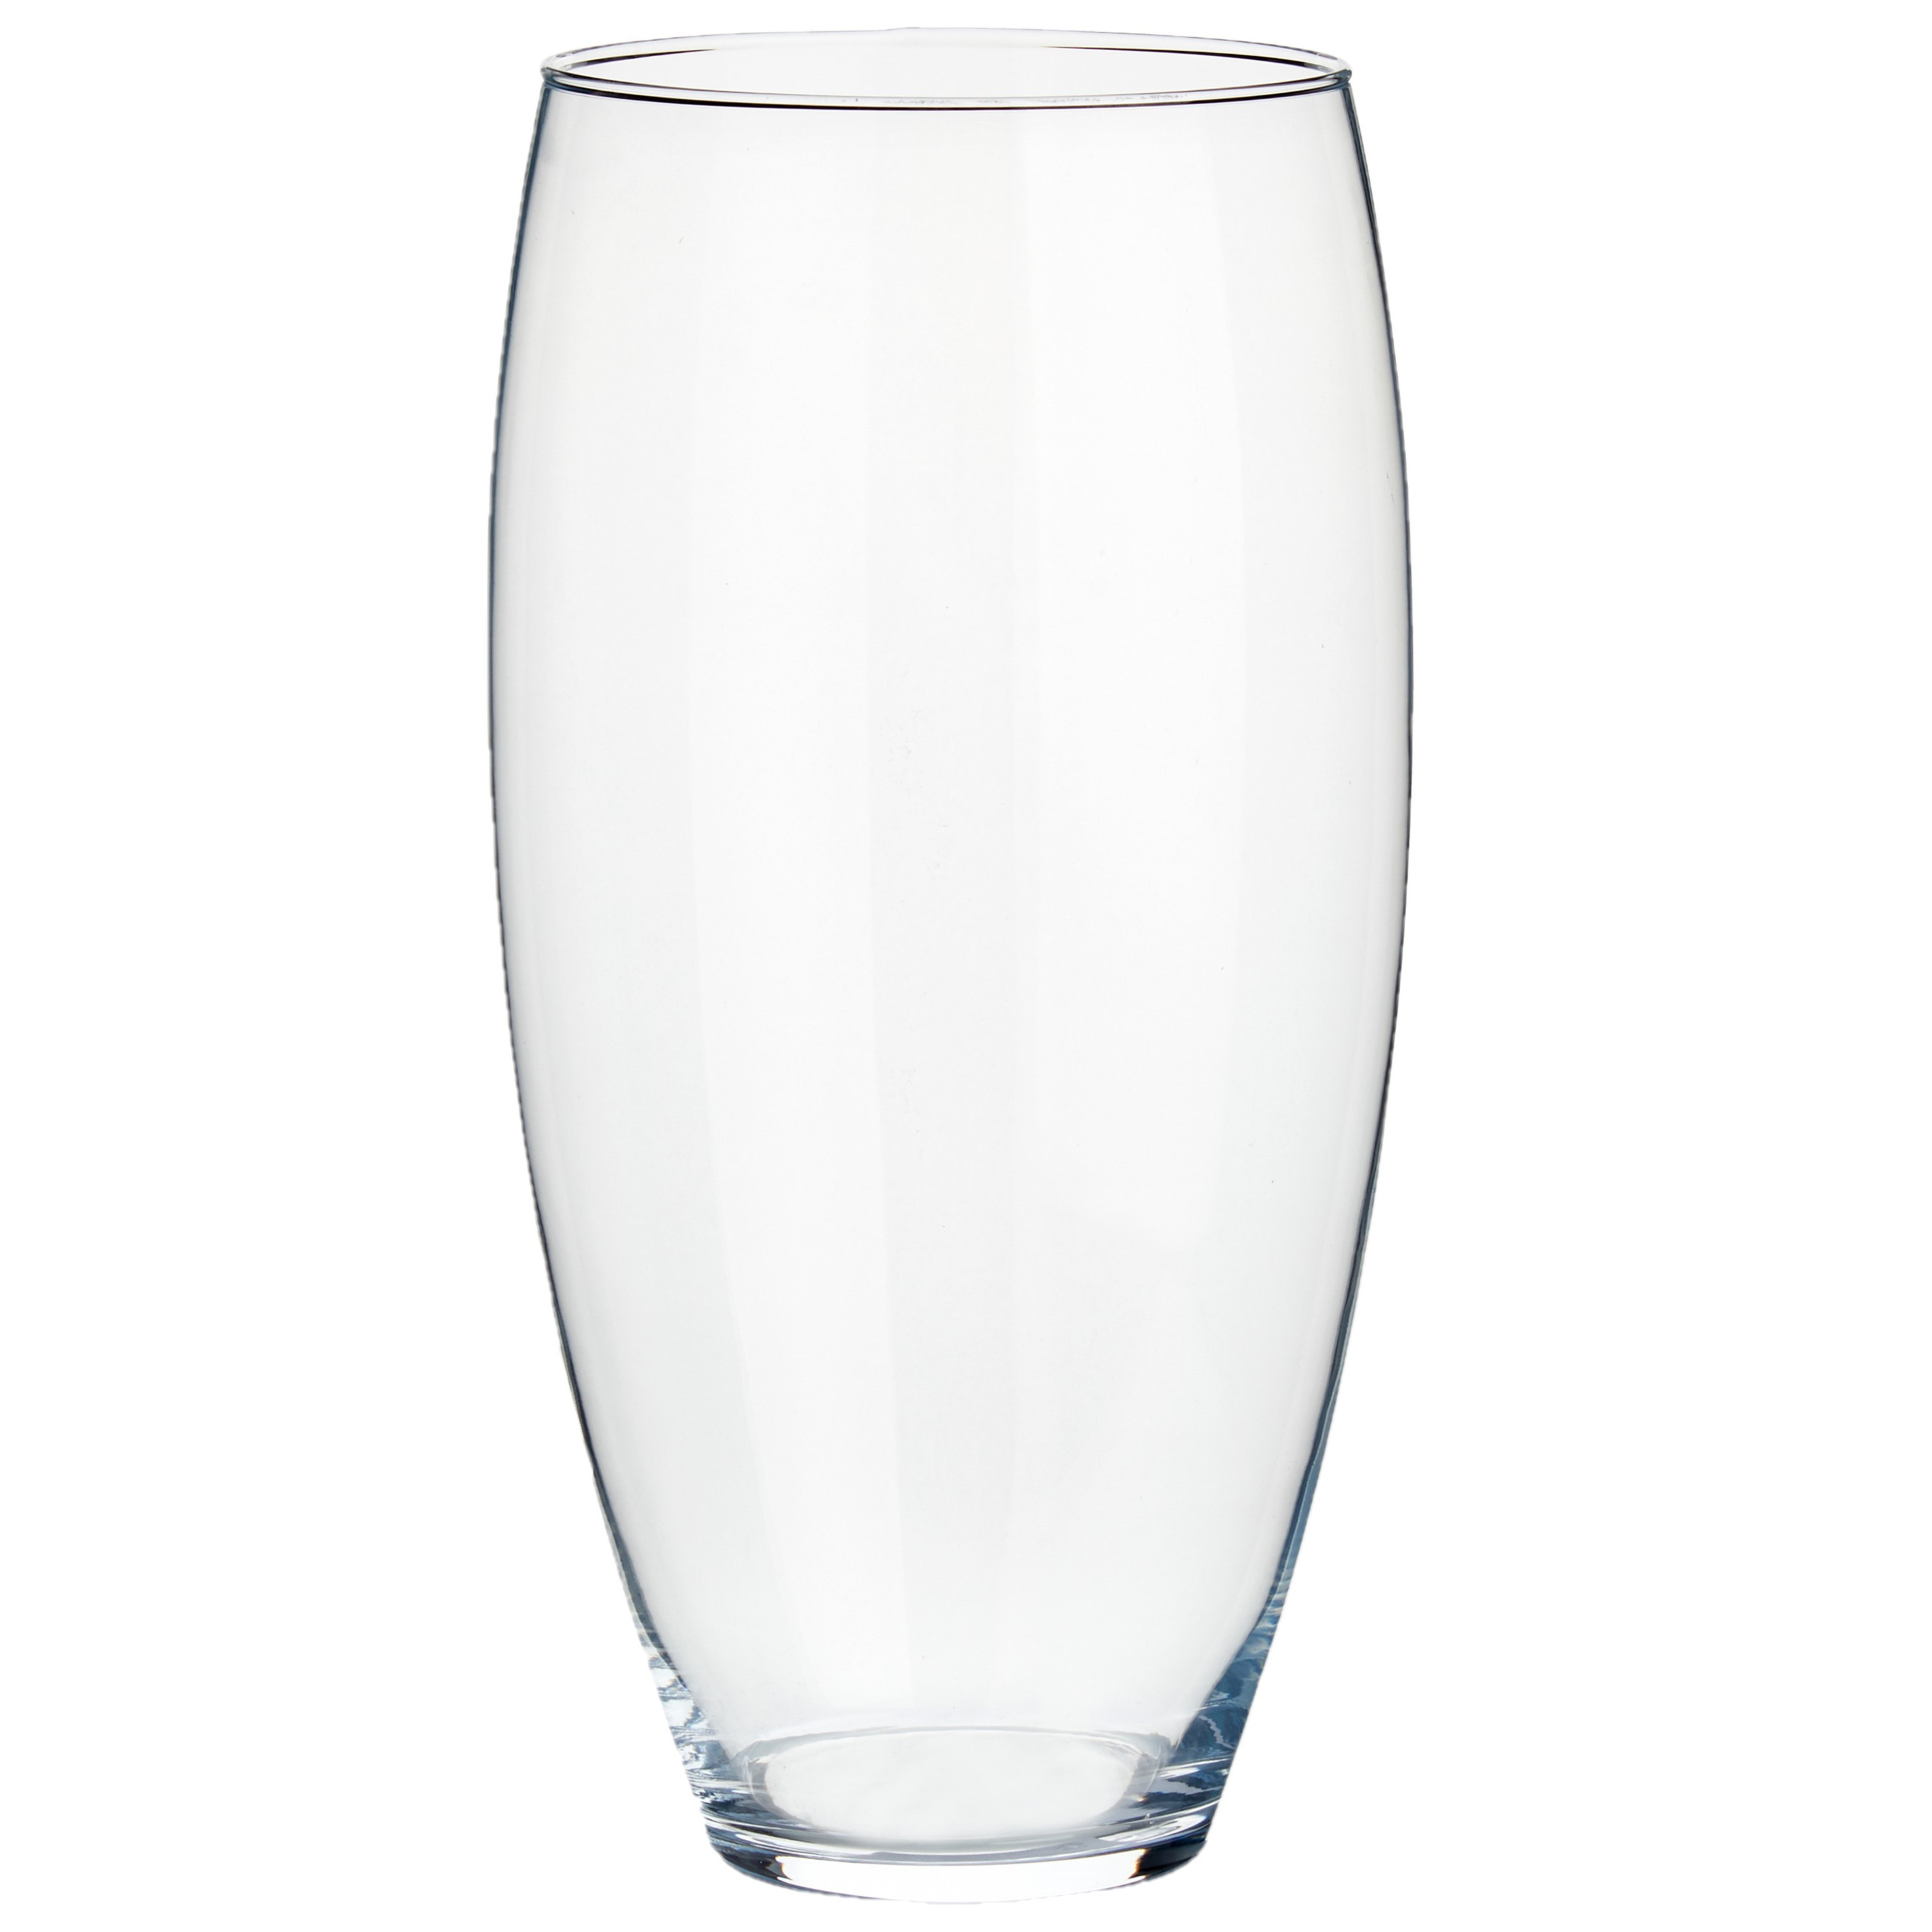 Bloemenvaas van glas 18 x 36 cm